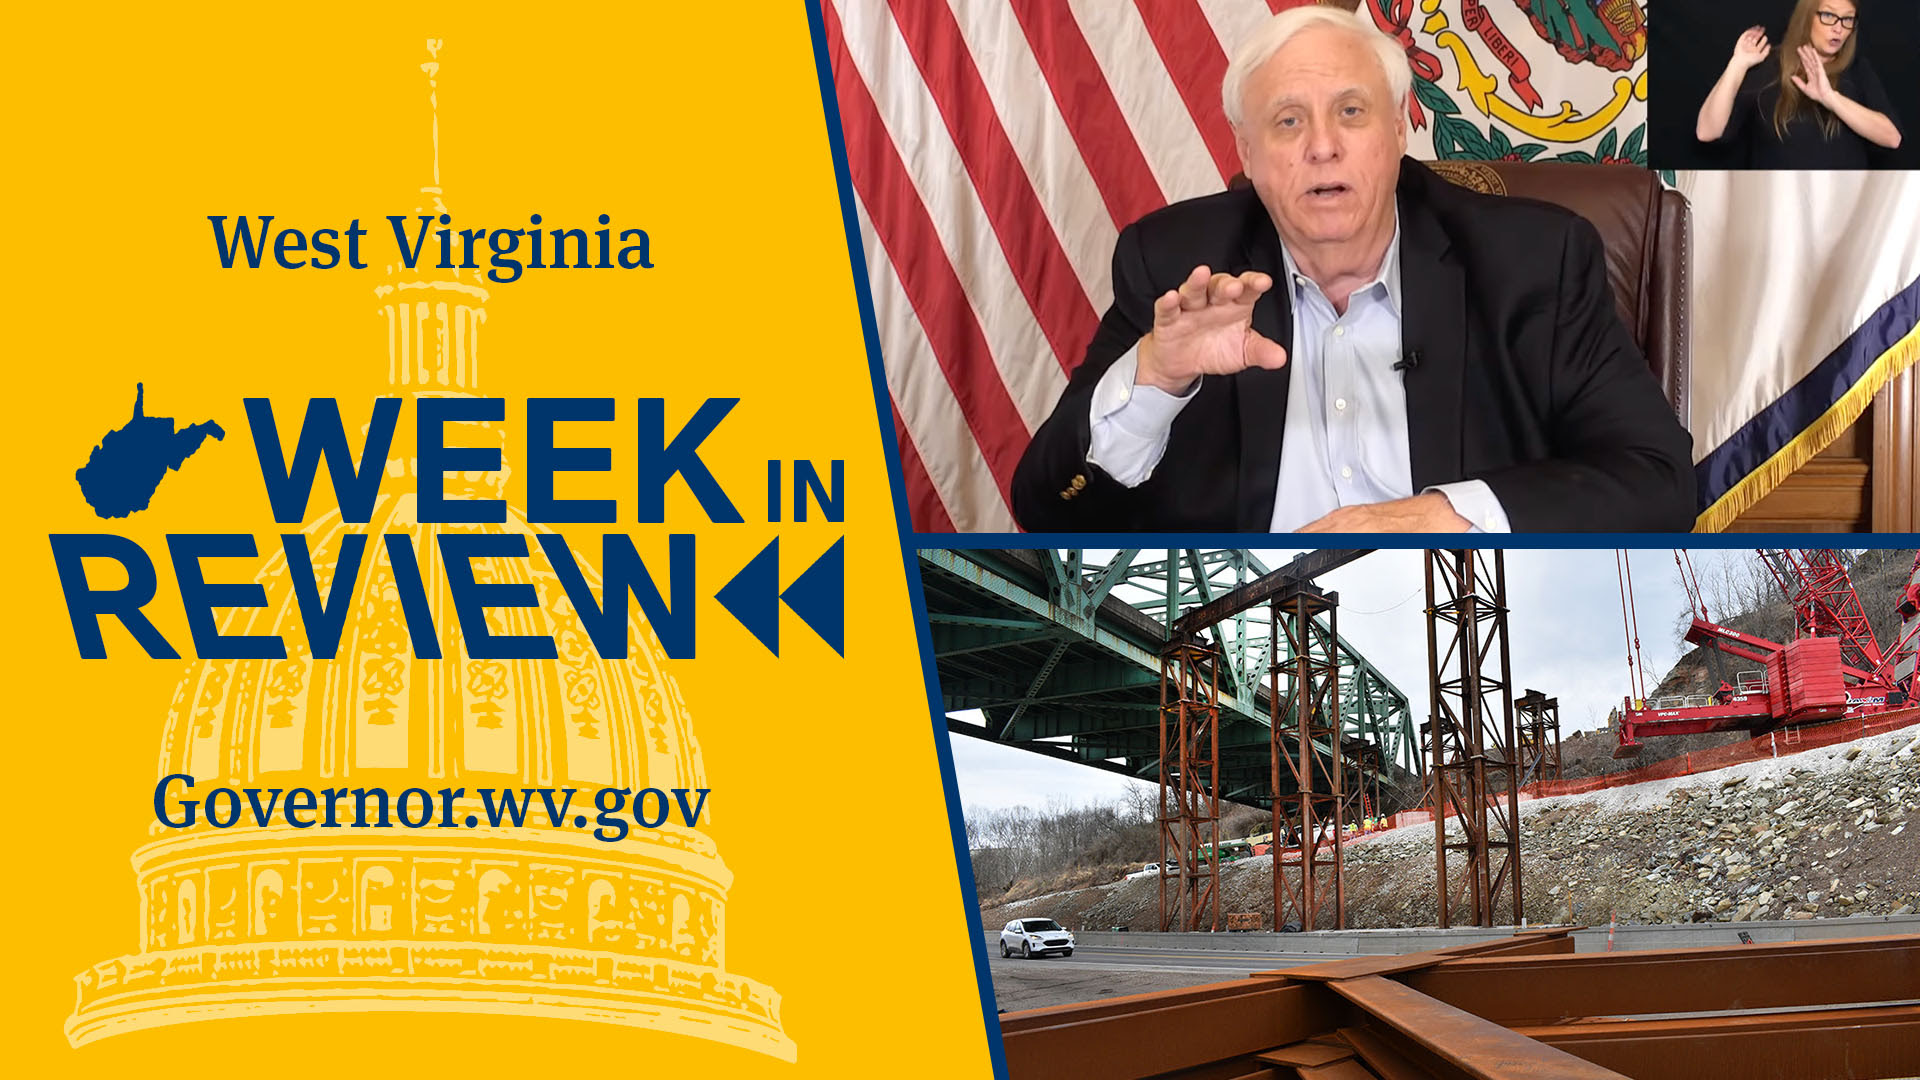 West Virginia Week in Review - February 19, 2022